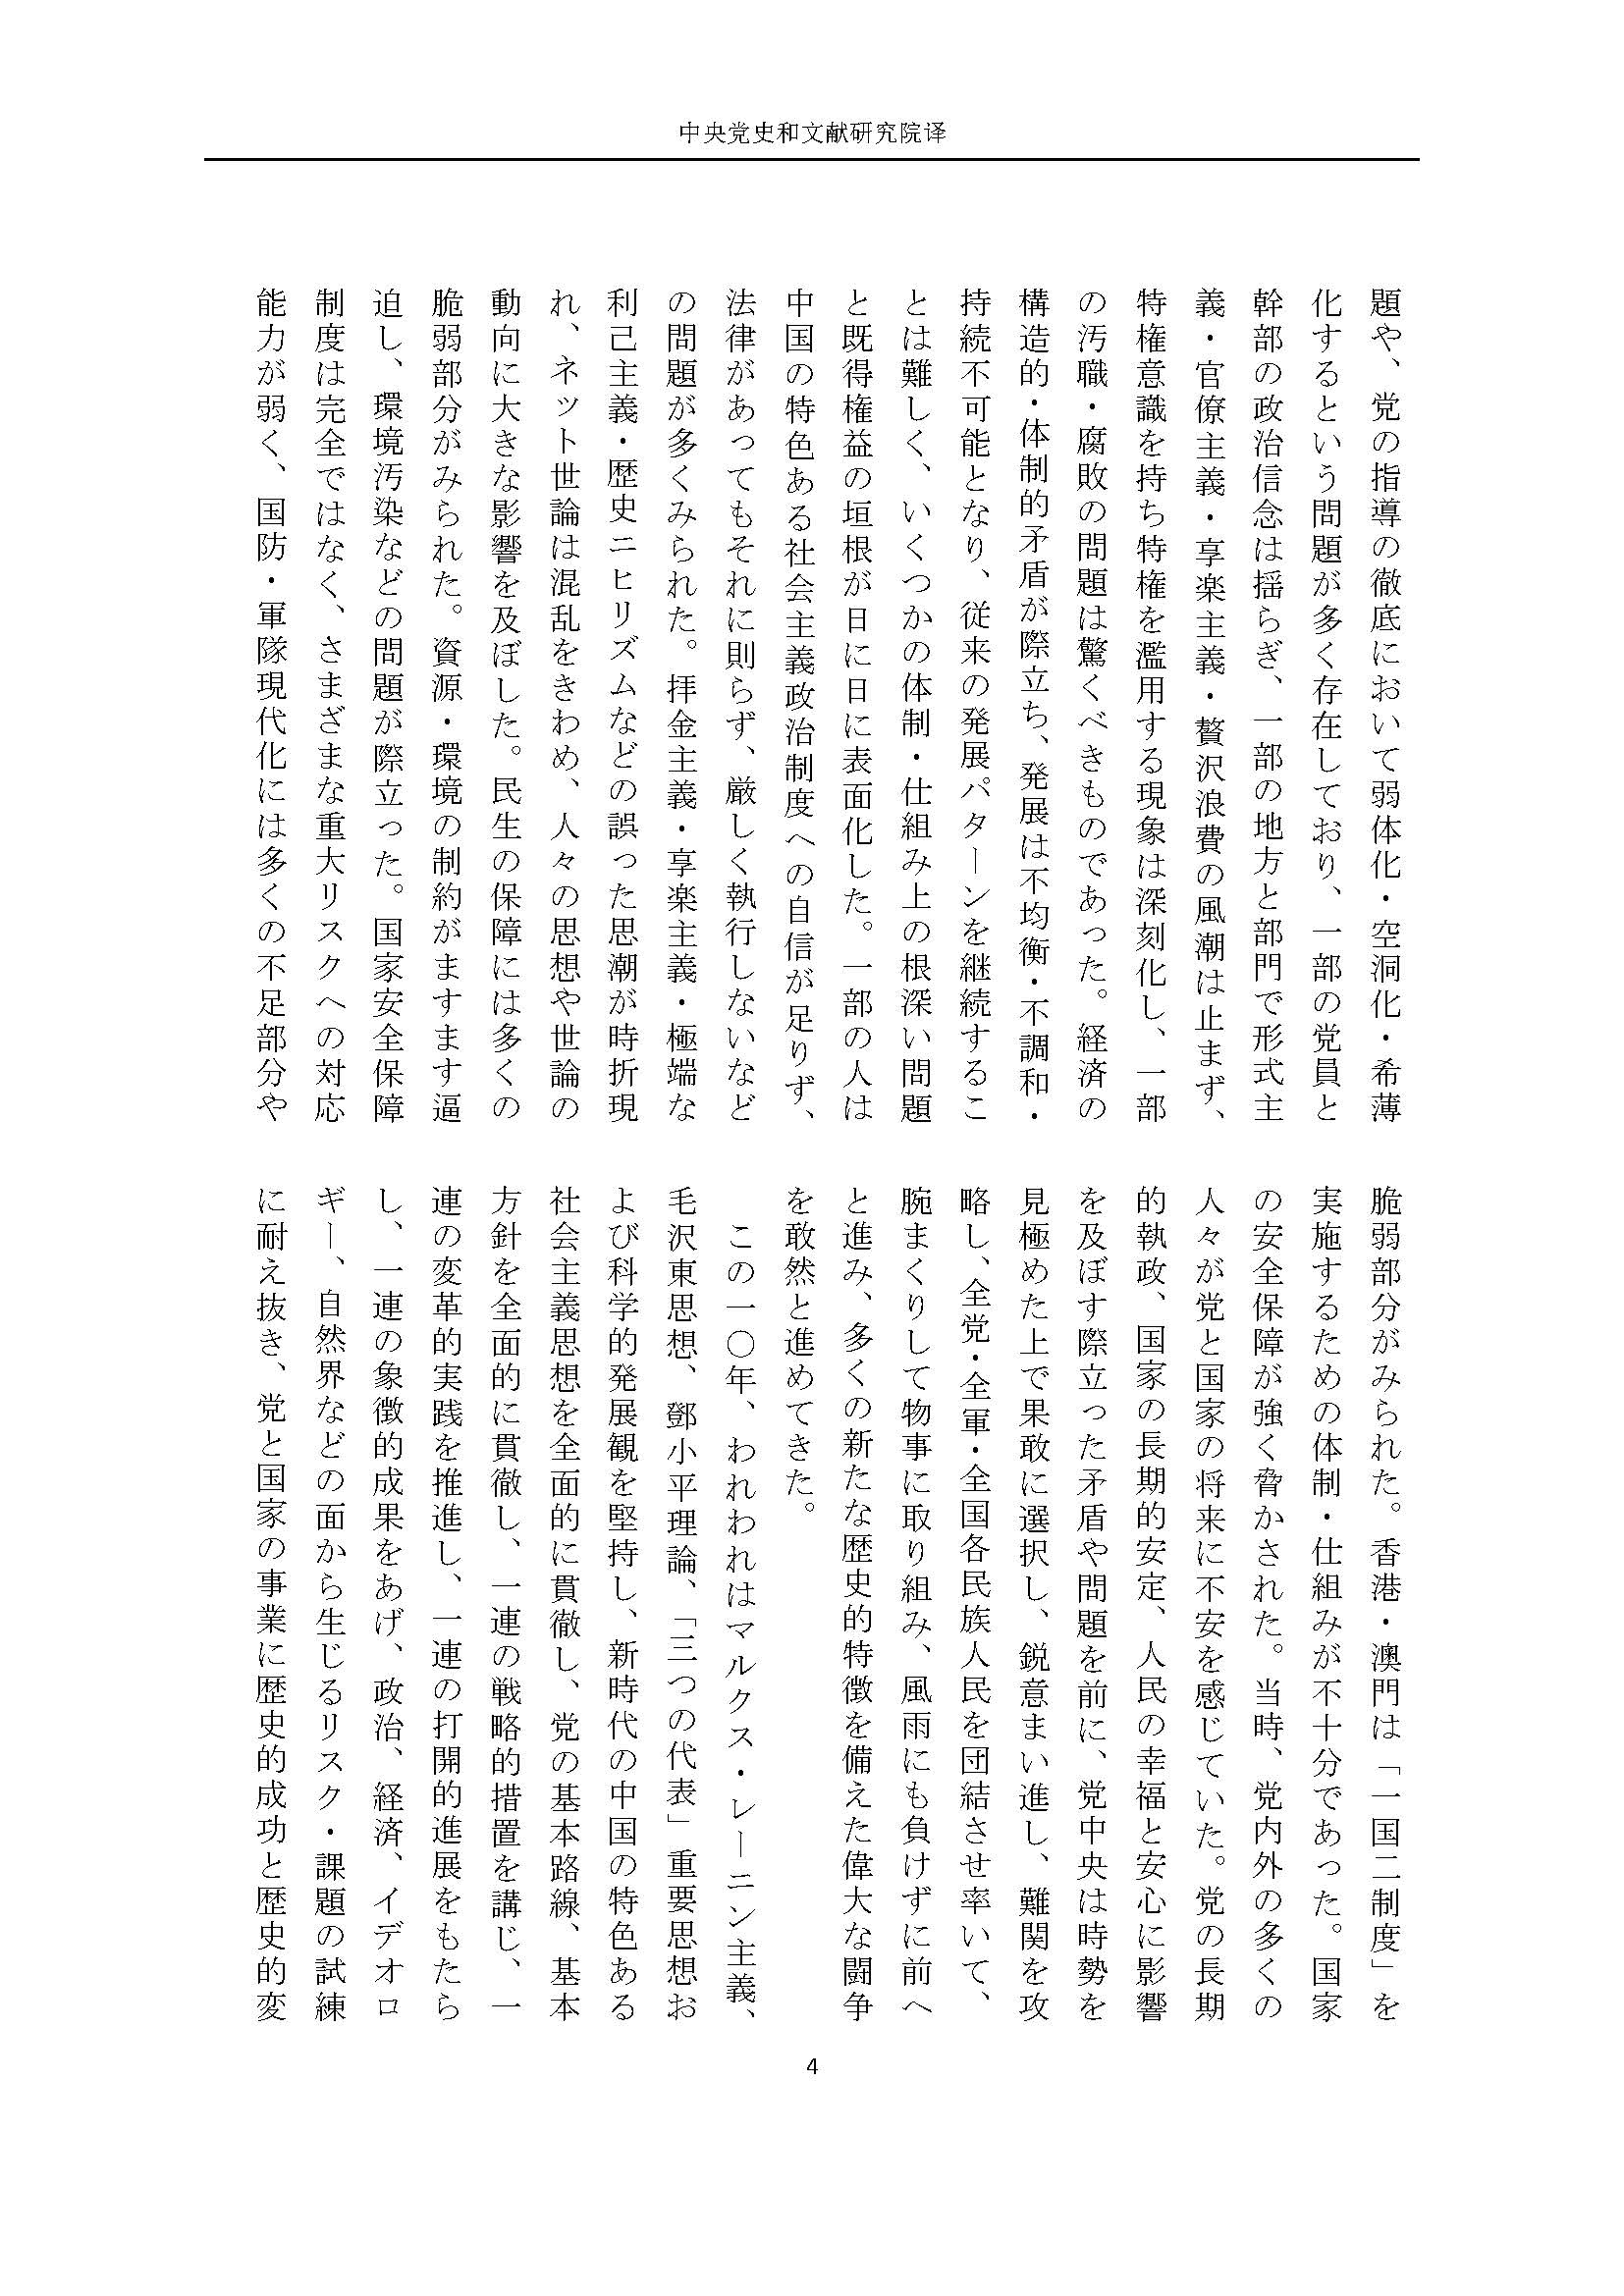 二十大报告（日文全文）_页面_05